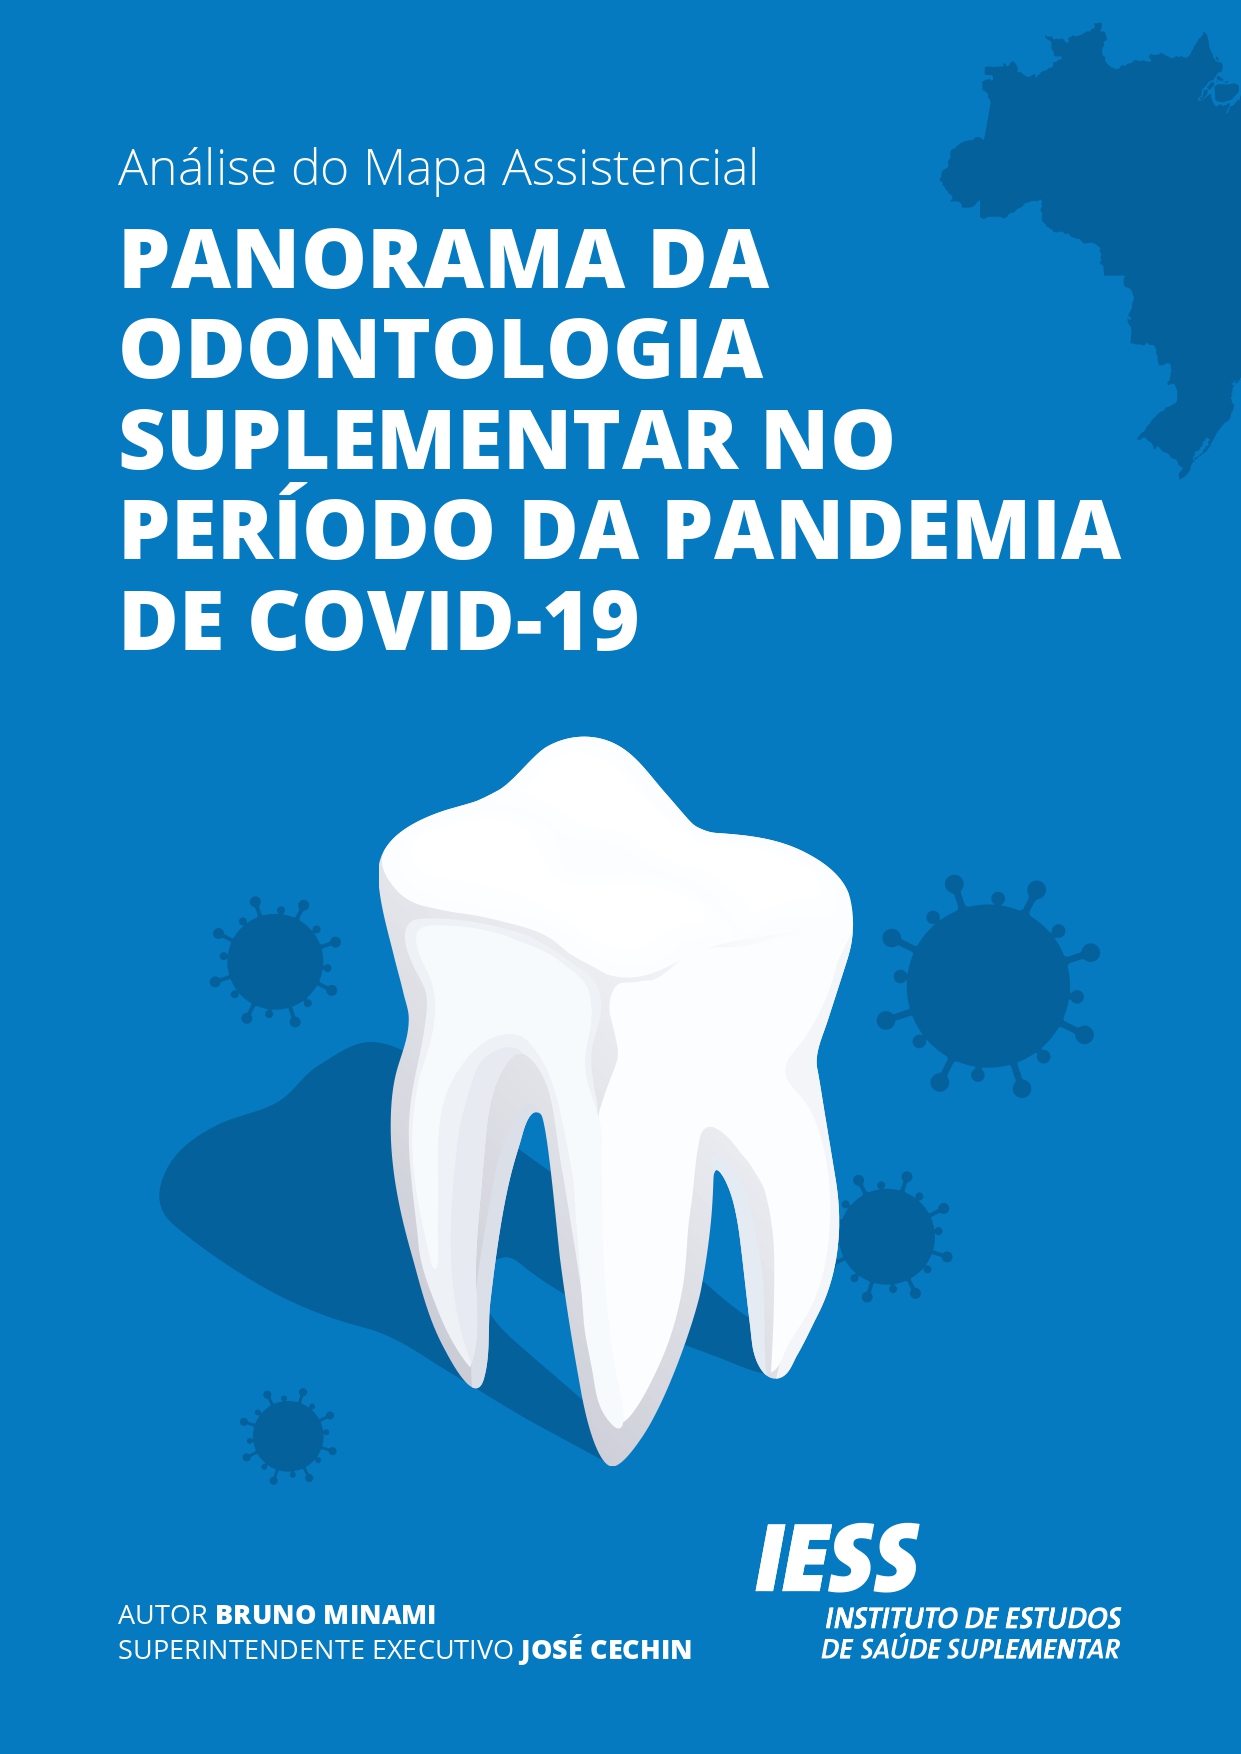 Análise do Mapa Assistencial: panorama da odontologia suplementar no período da pandemia de Covid-19